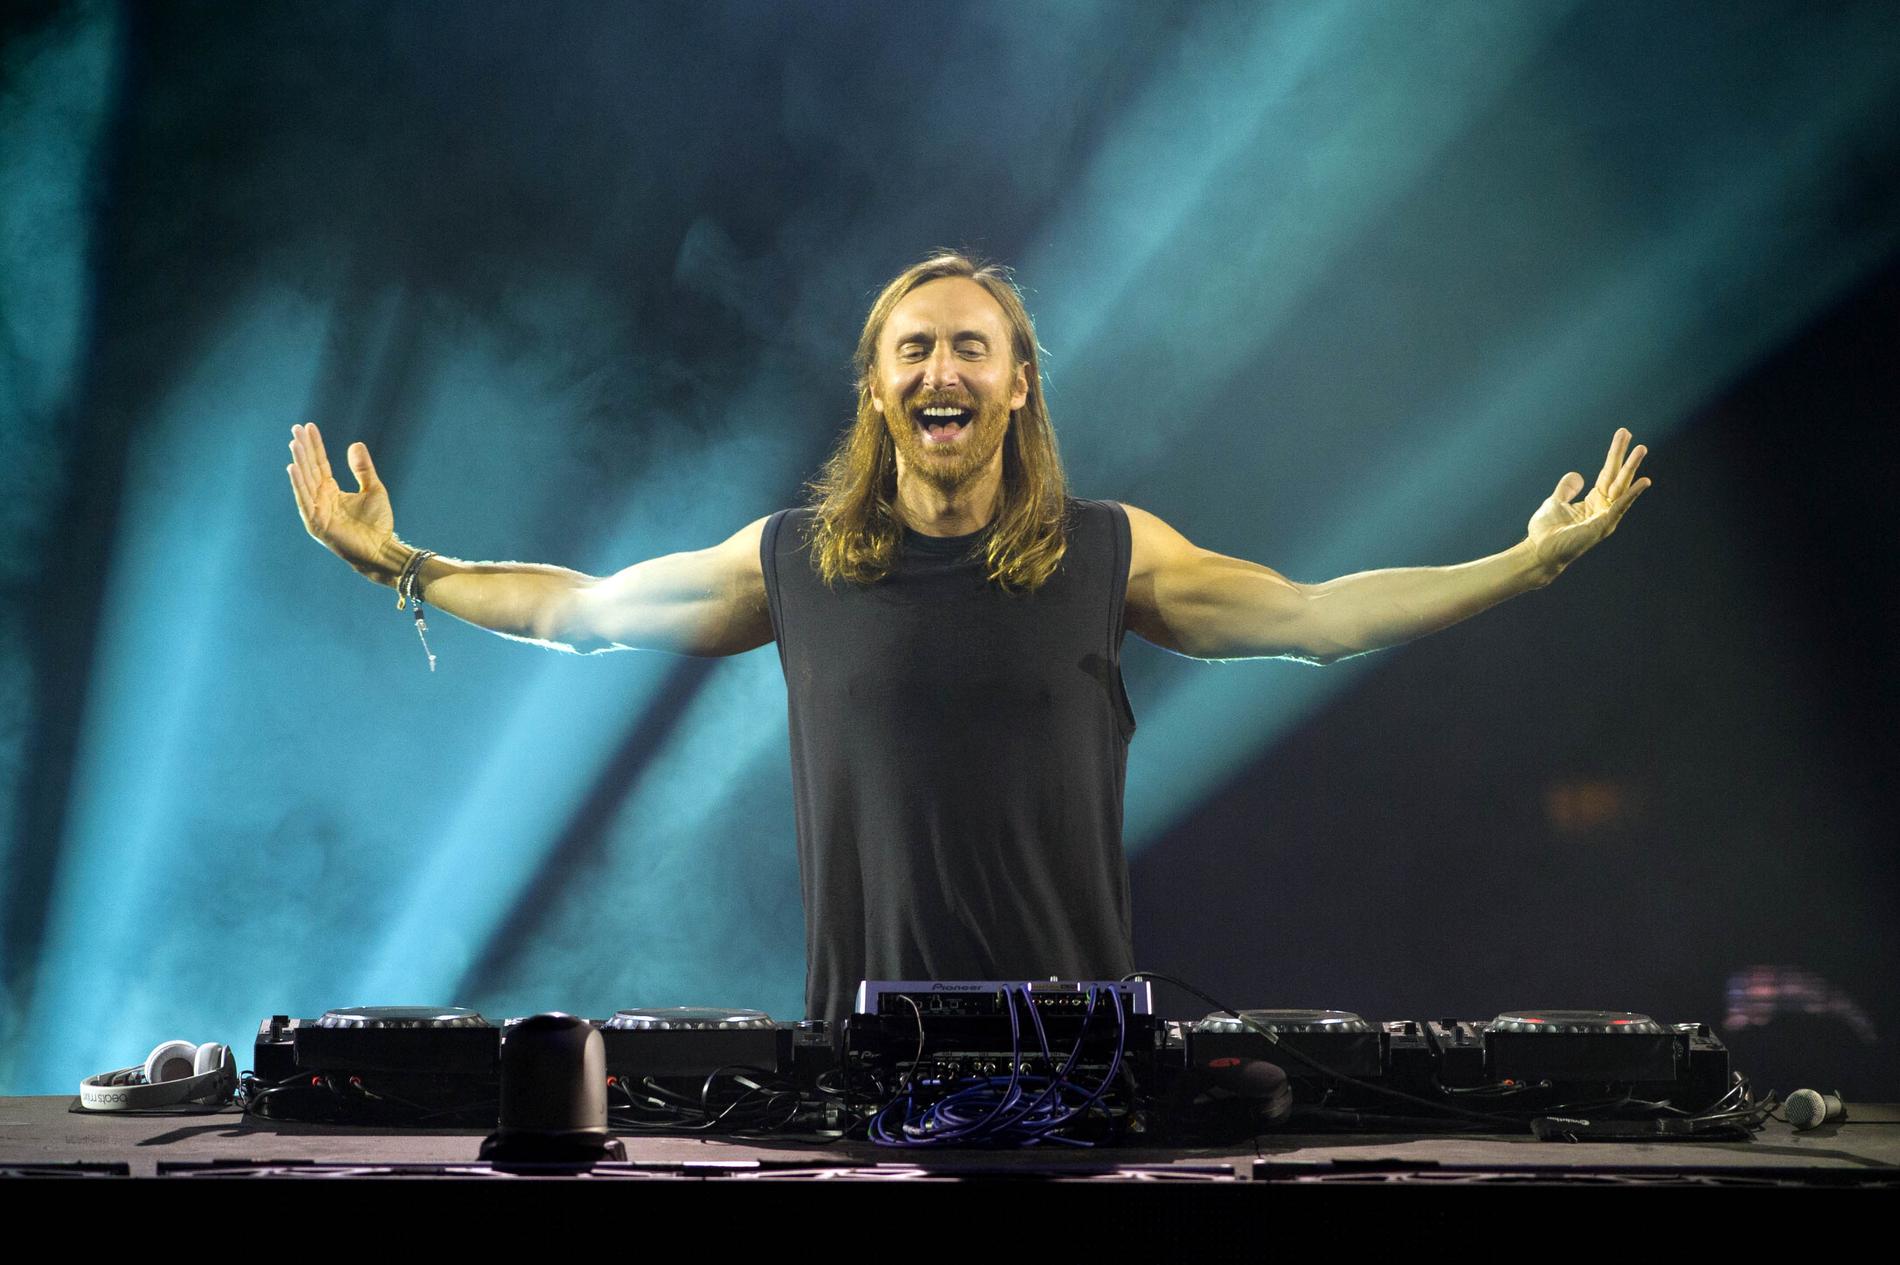 Så här glad blir Guetta av svängig musik  FOTO: All Over Press